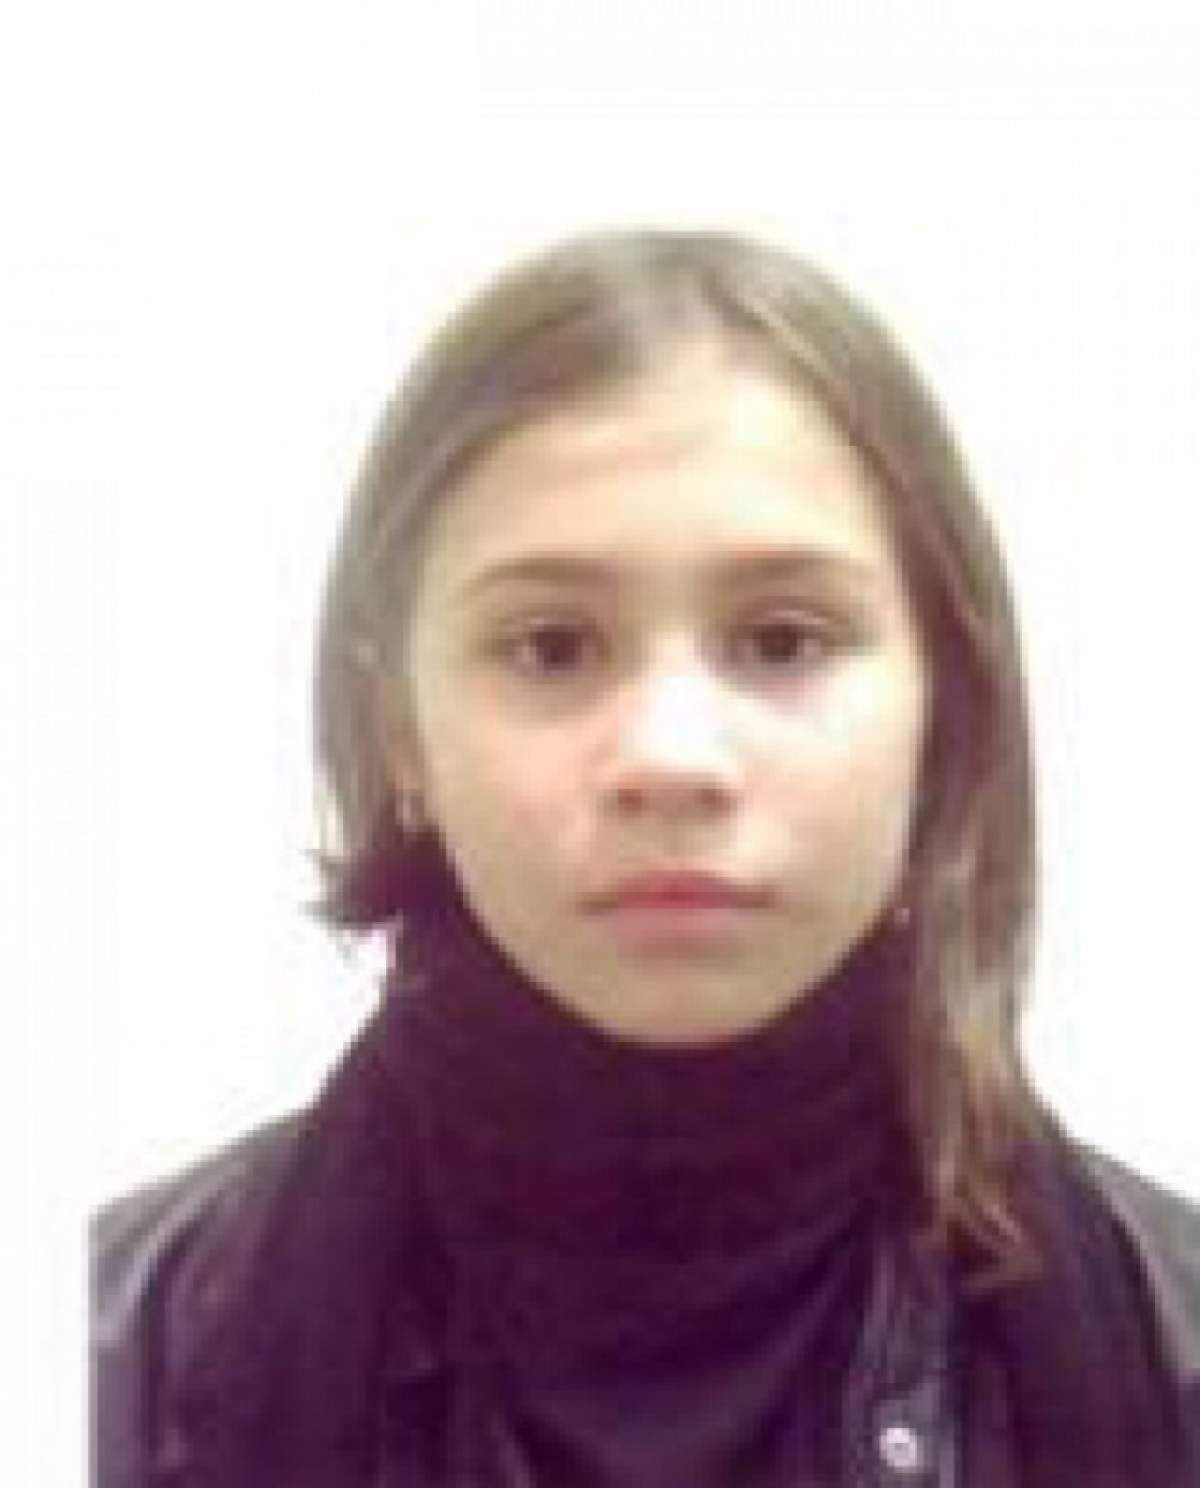 România în ALERTĂ! O minoră de doar 11 ani a dispărut fără urmă!